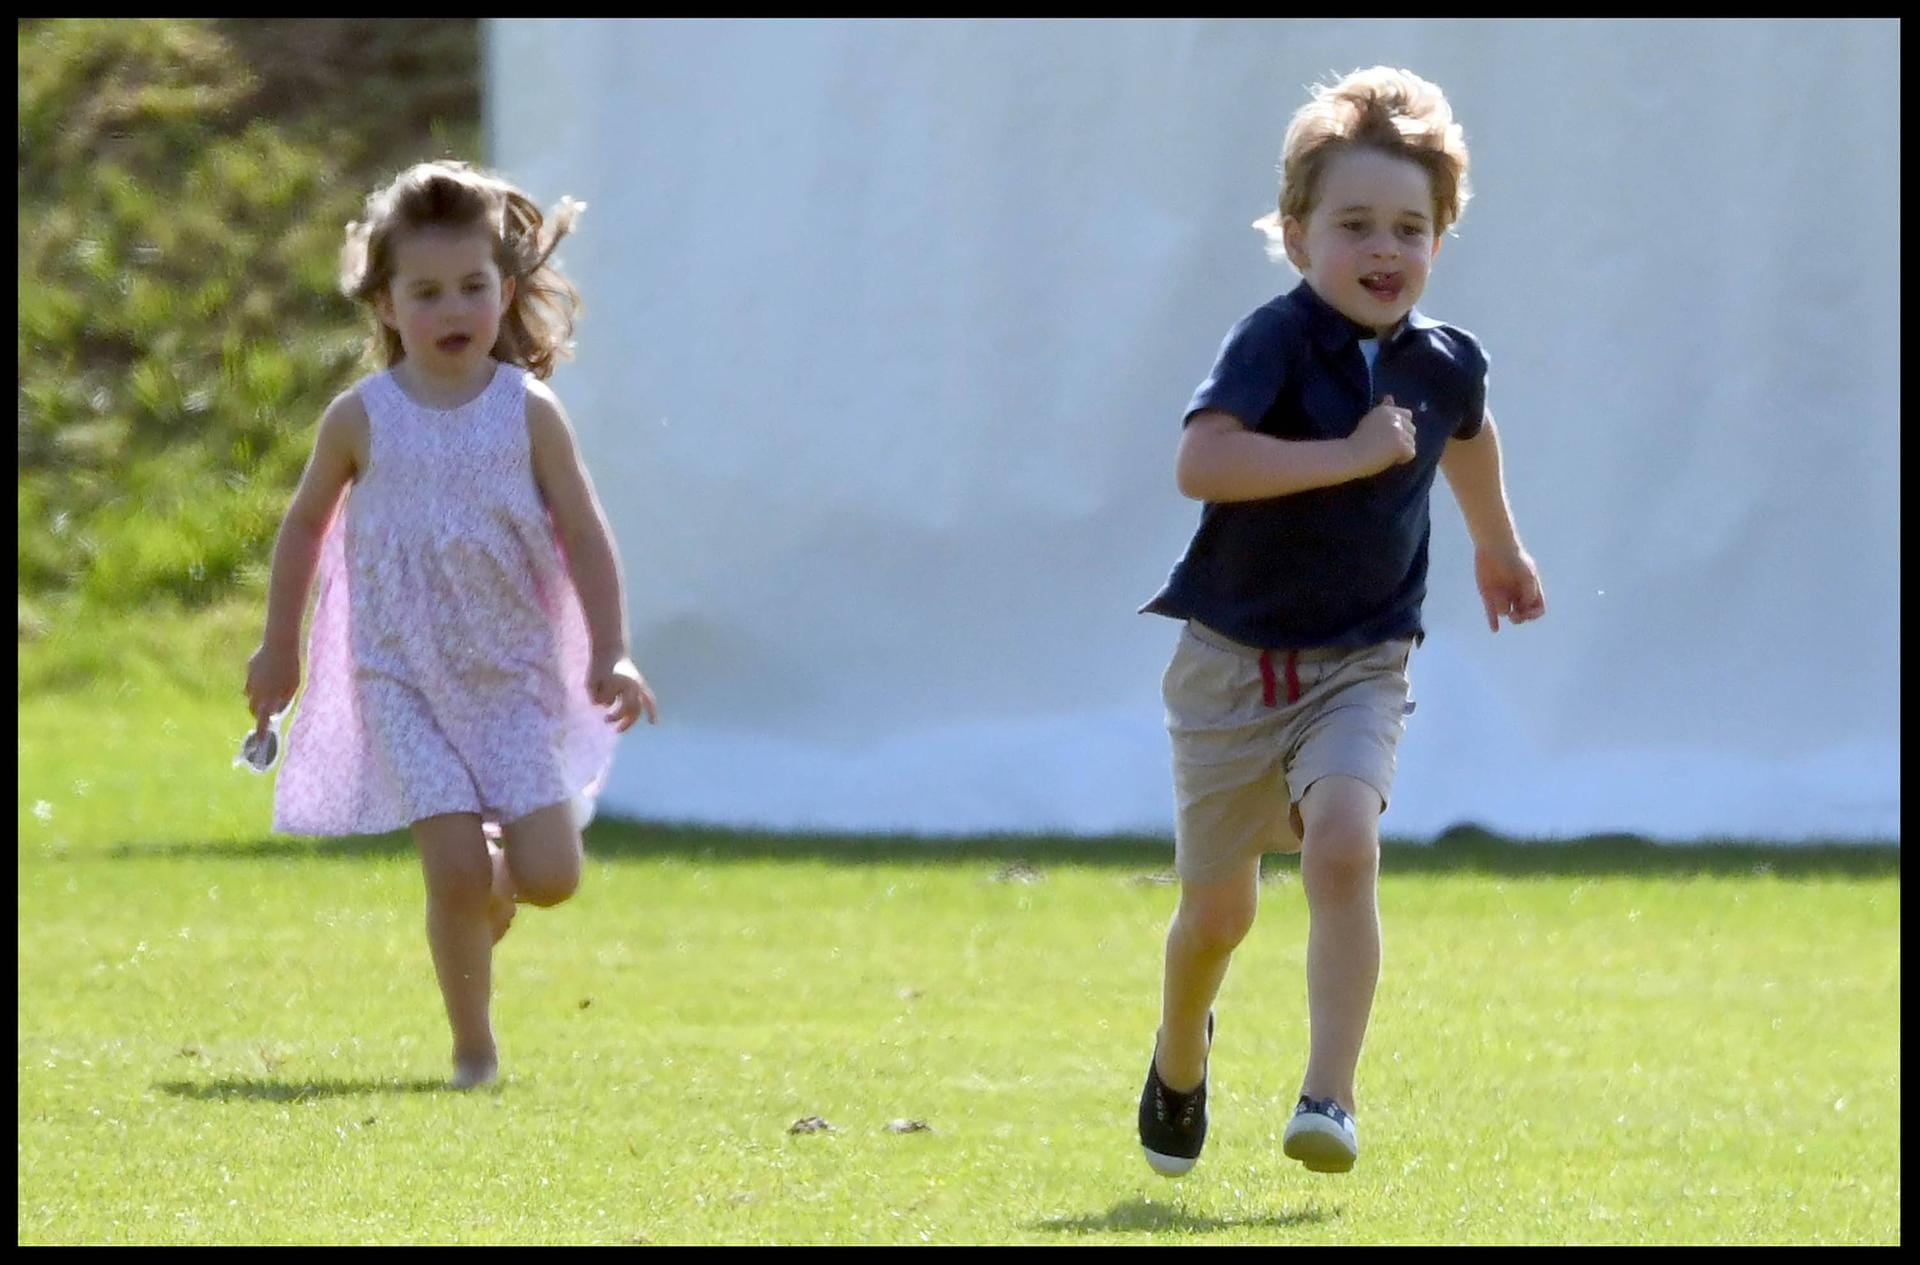 Royal-Kids spielen Fangen: Ob Charlotte ihren großen Bruder wohl schnappen kann?